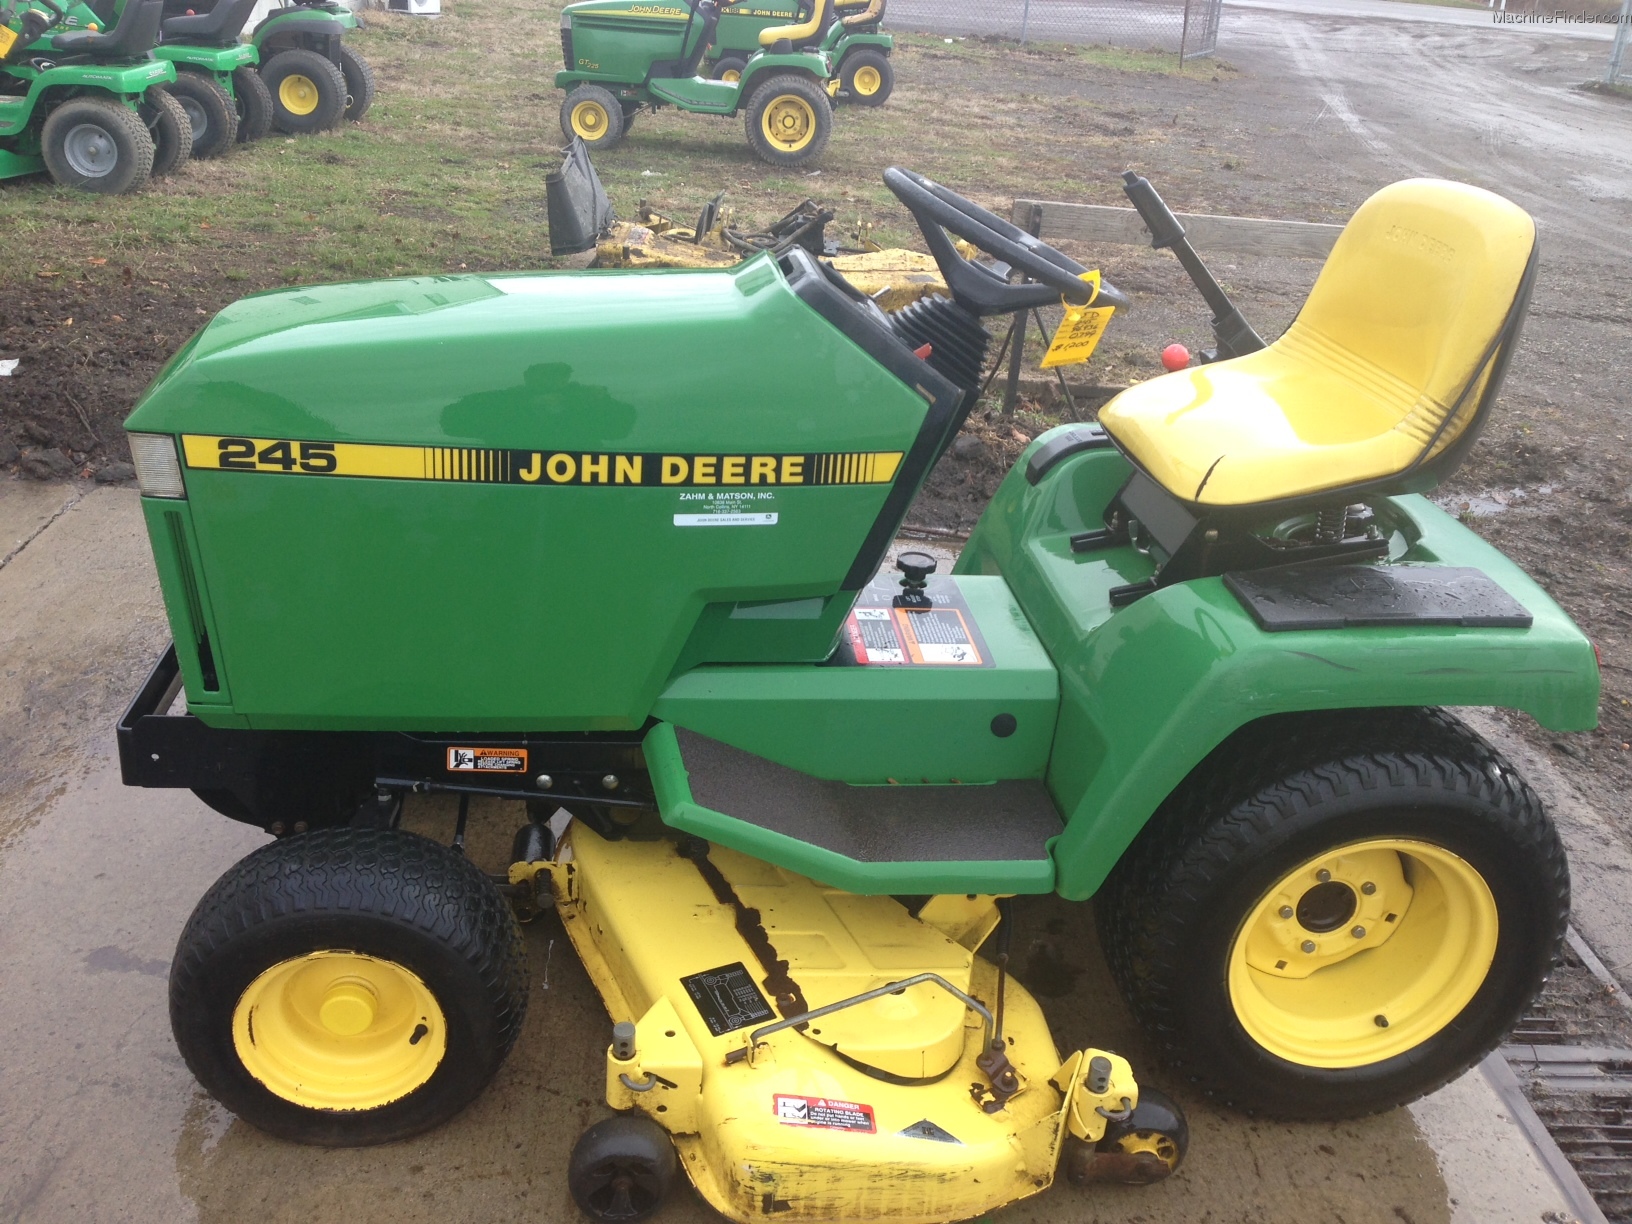 1993 John Deere 245 Lawn & Garden and Commercial Mowing - John Deere MachineFinder